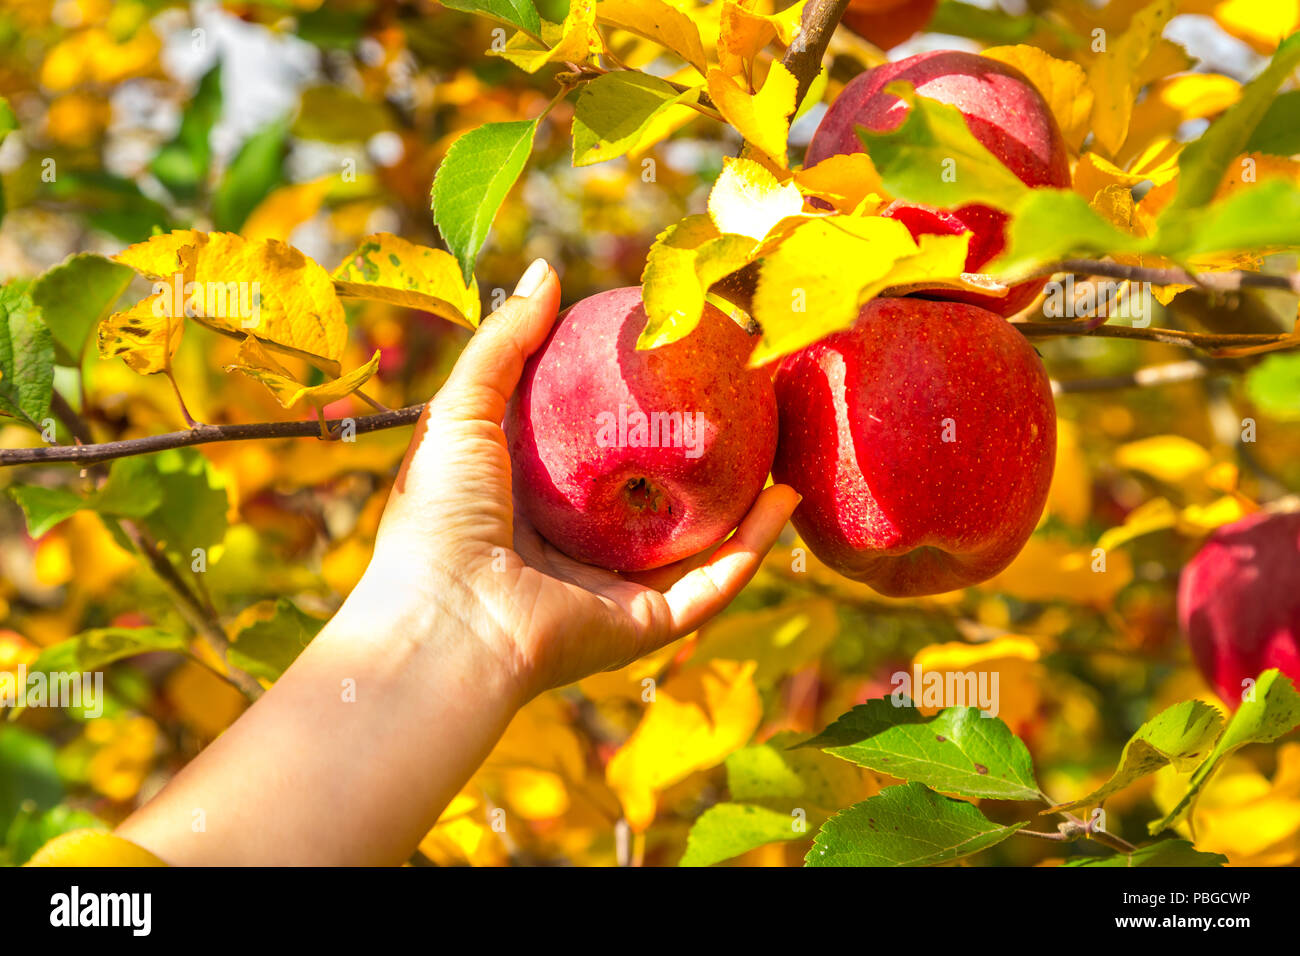 Mano recogiendo manzanas durante la temporada de cosecha de otoño a finales de septiembre hasta comienzos de octubre. Foto de stock